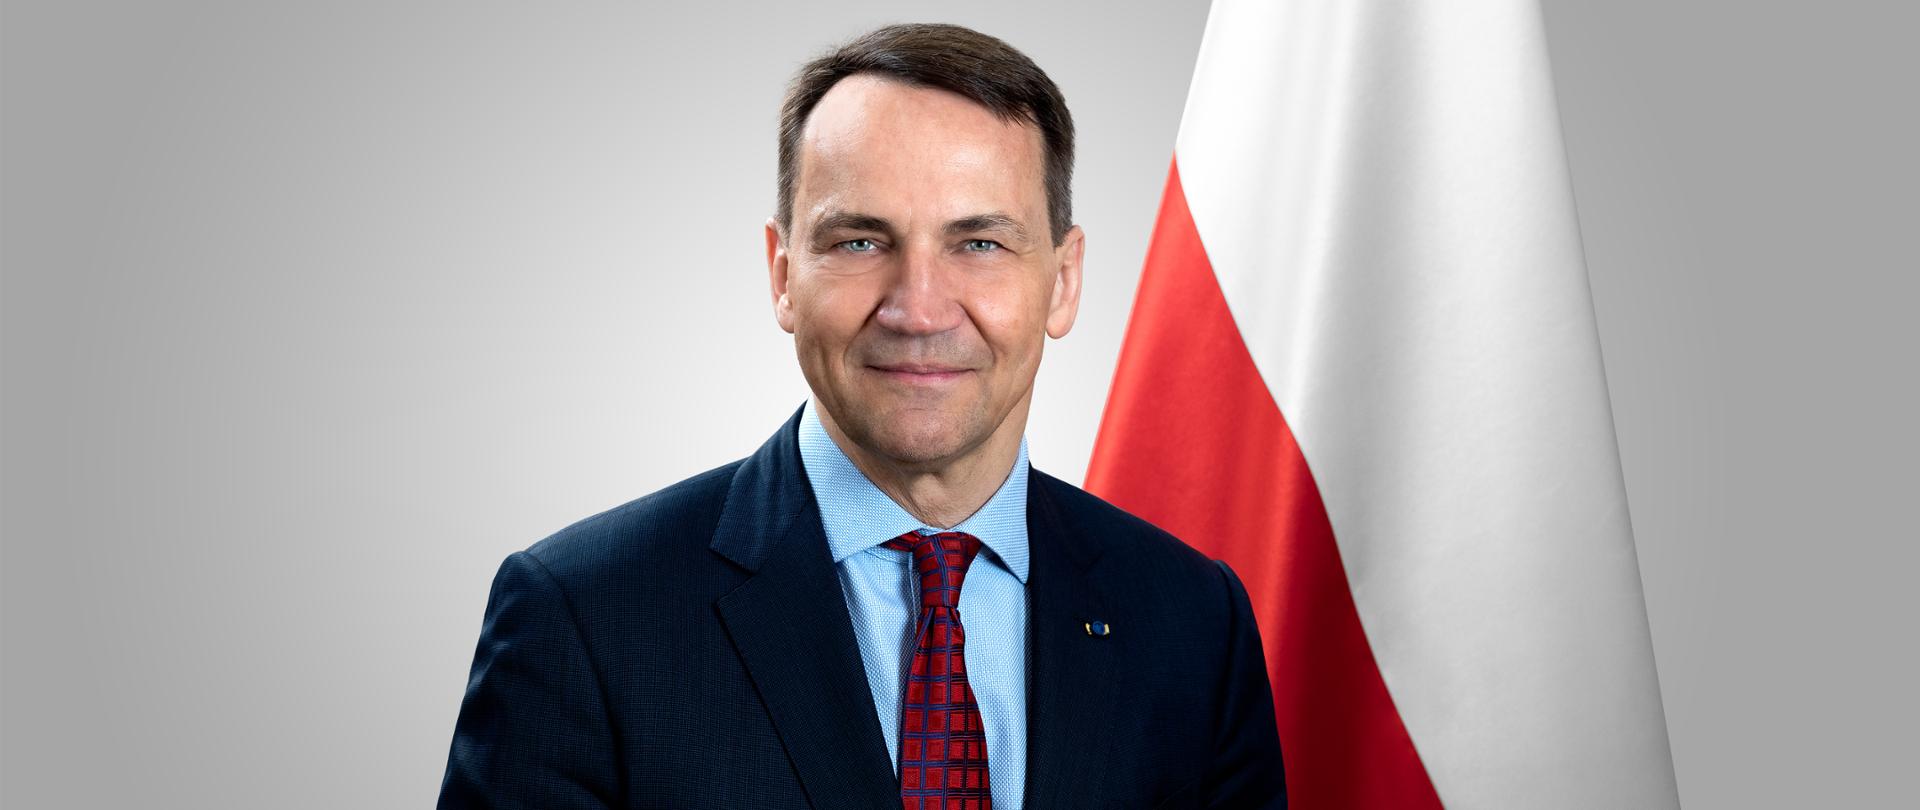 Minister Spraw Zagranicznych Radosław Sikorski na tle flagi Polski